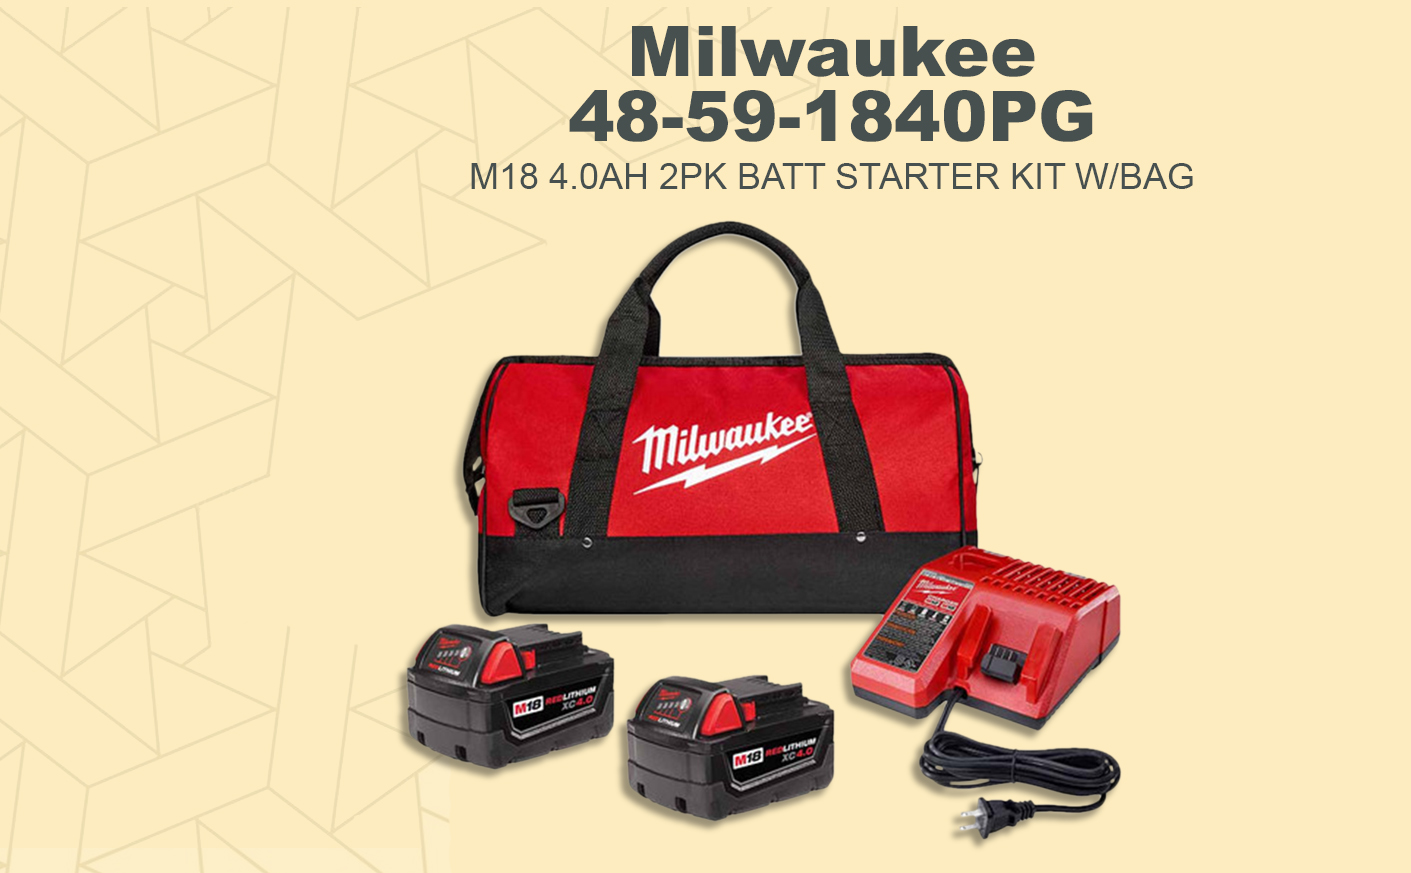 Milwaukee 48-59-1840PG M18 4.0AH 2PK BATT STARTER KIT W/BAG